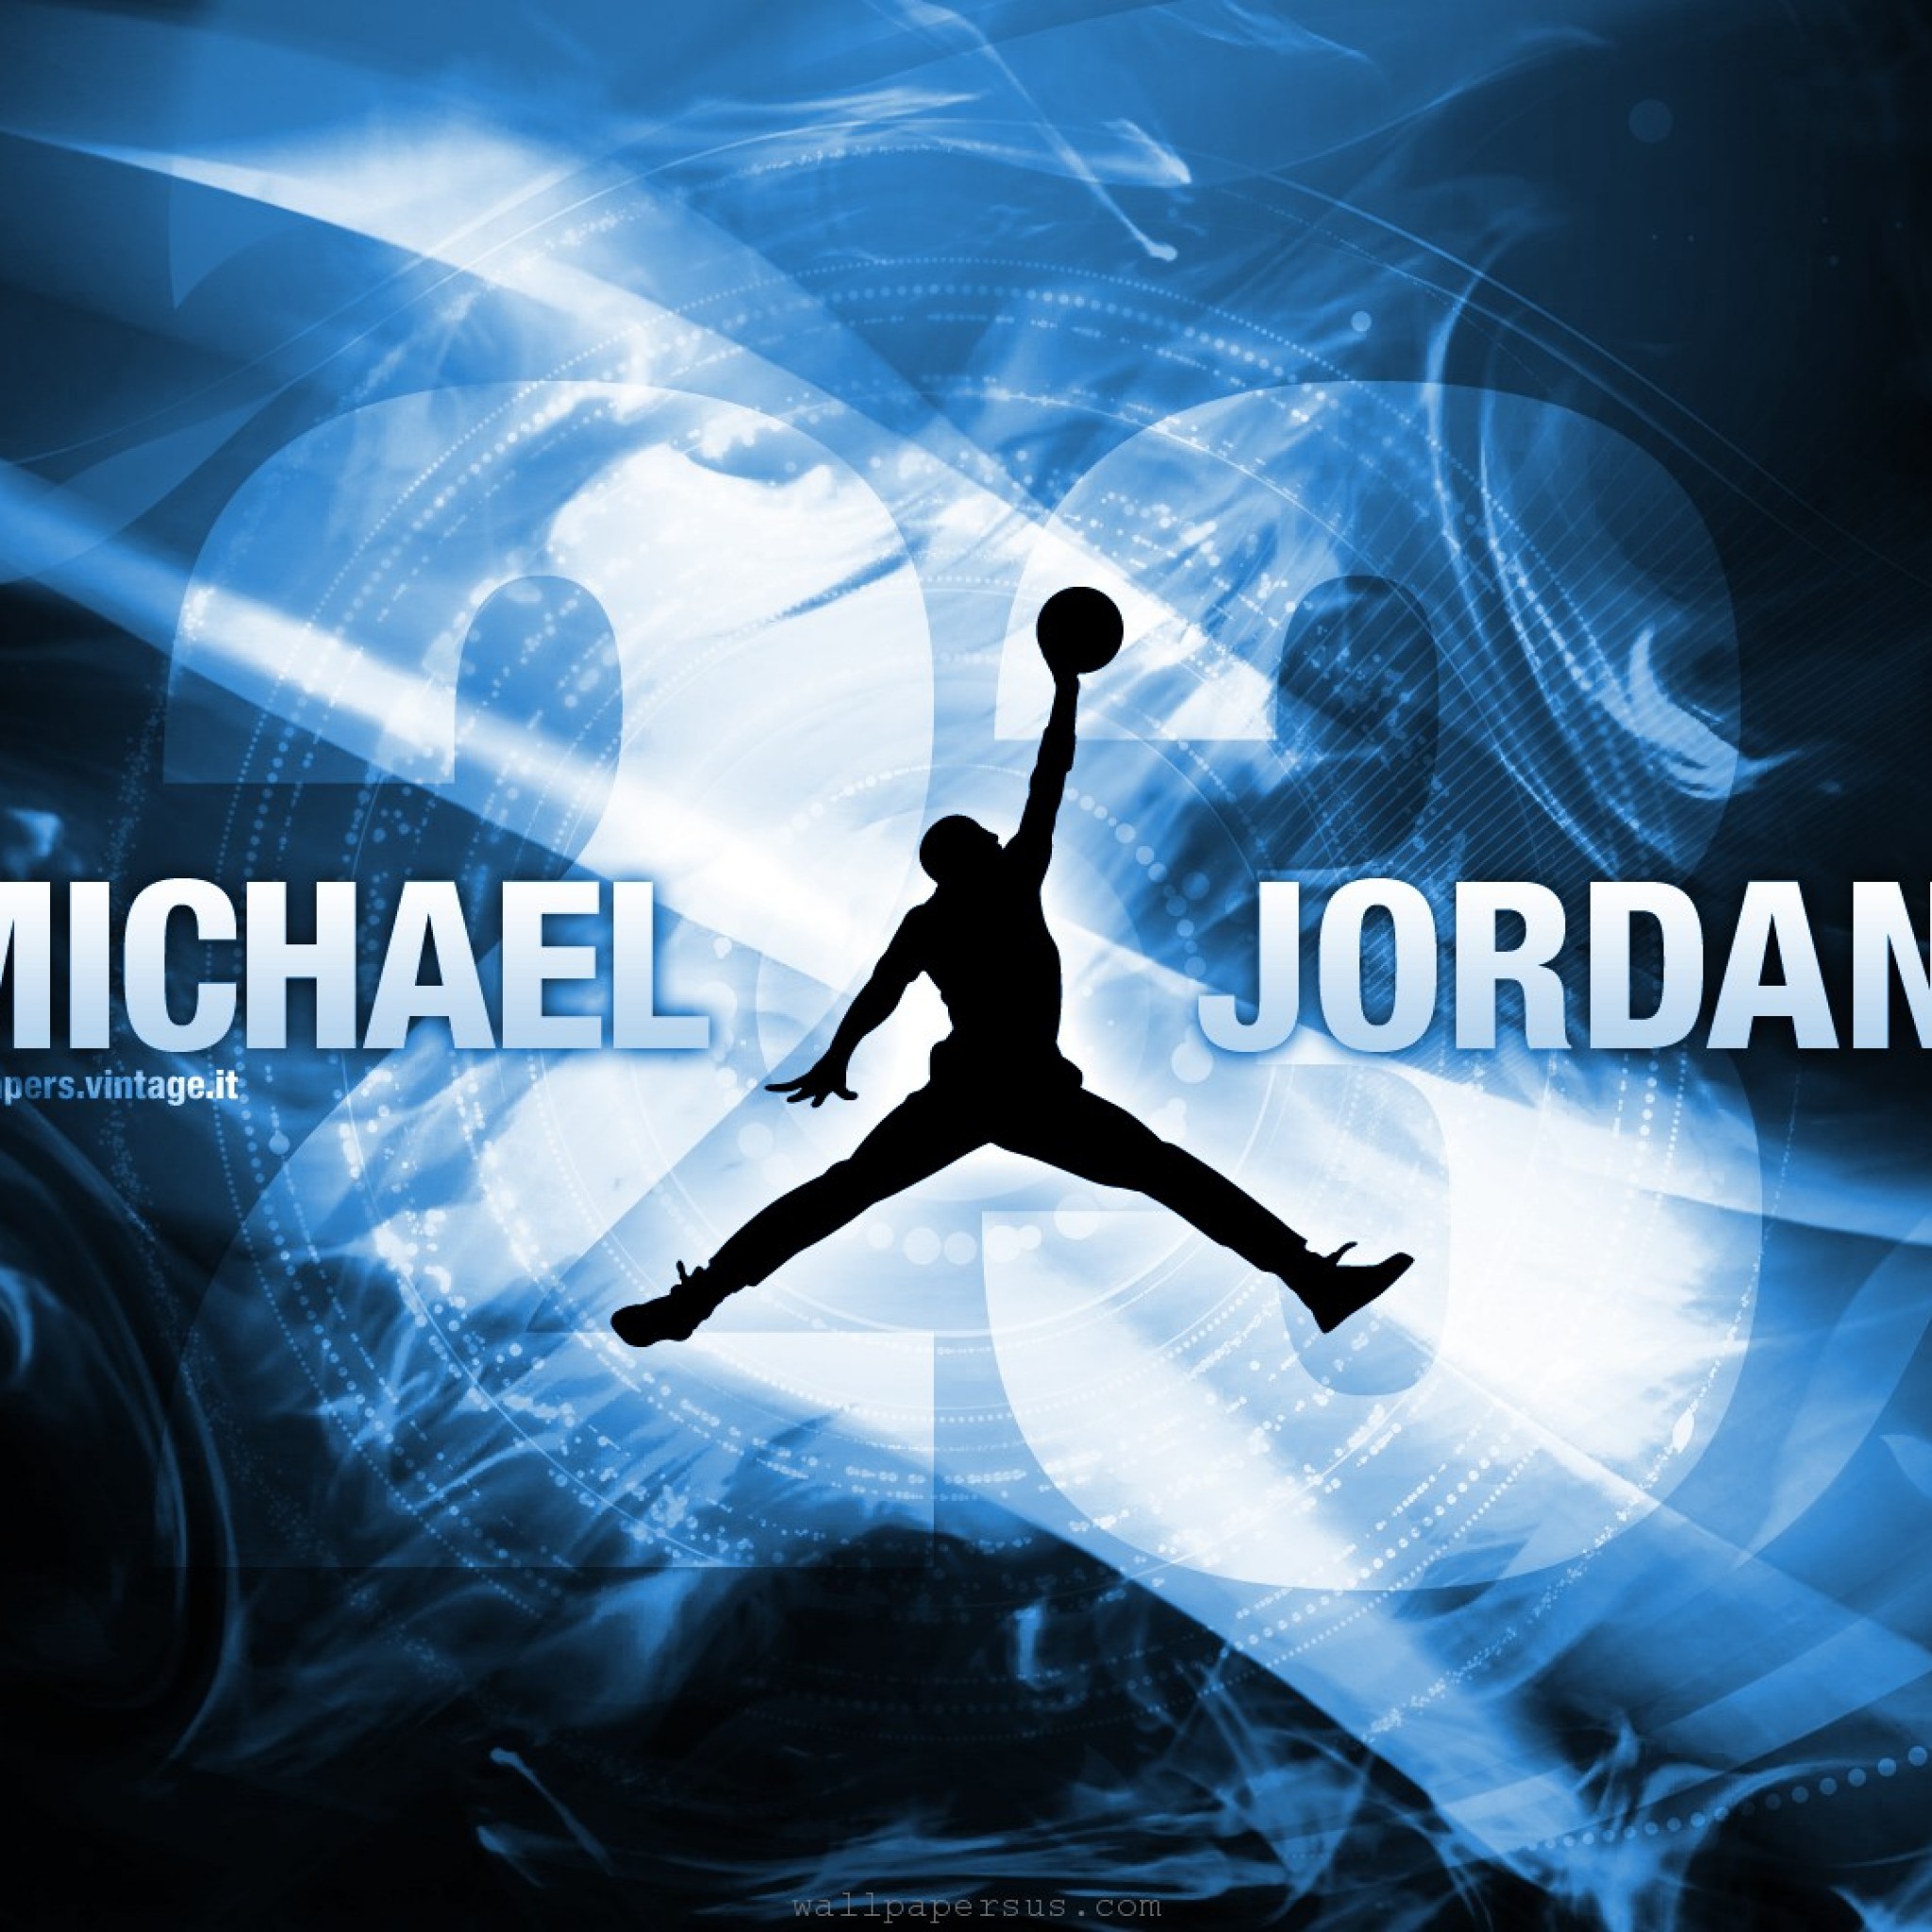 Michael Jordan Wallpaper Sport Wallpapersus Com Ipad タブレット壁紙ギャラリー